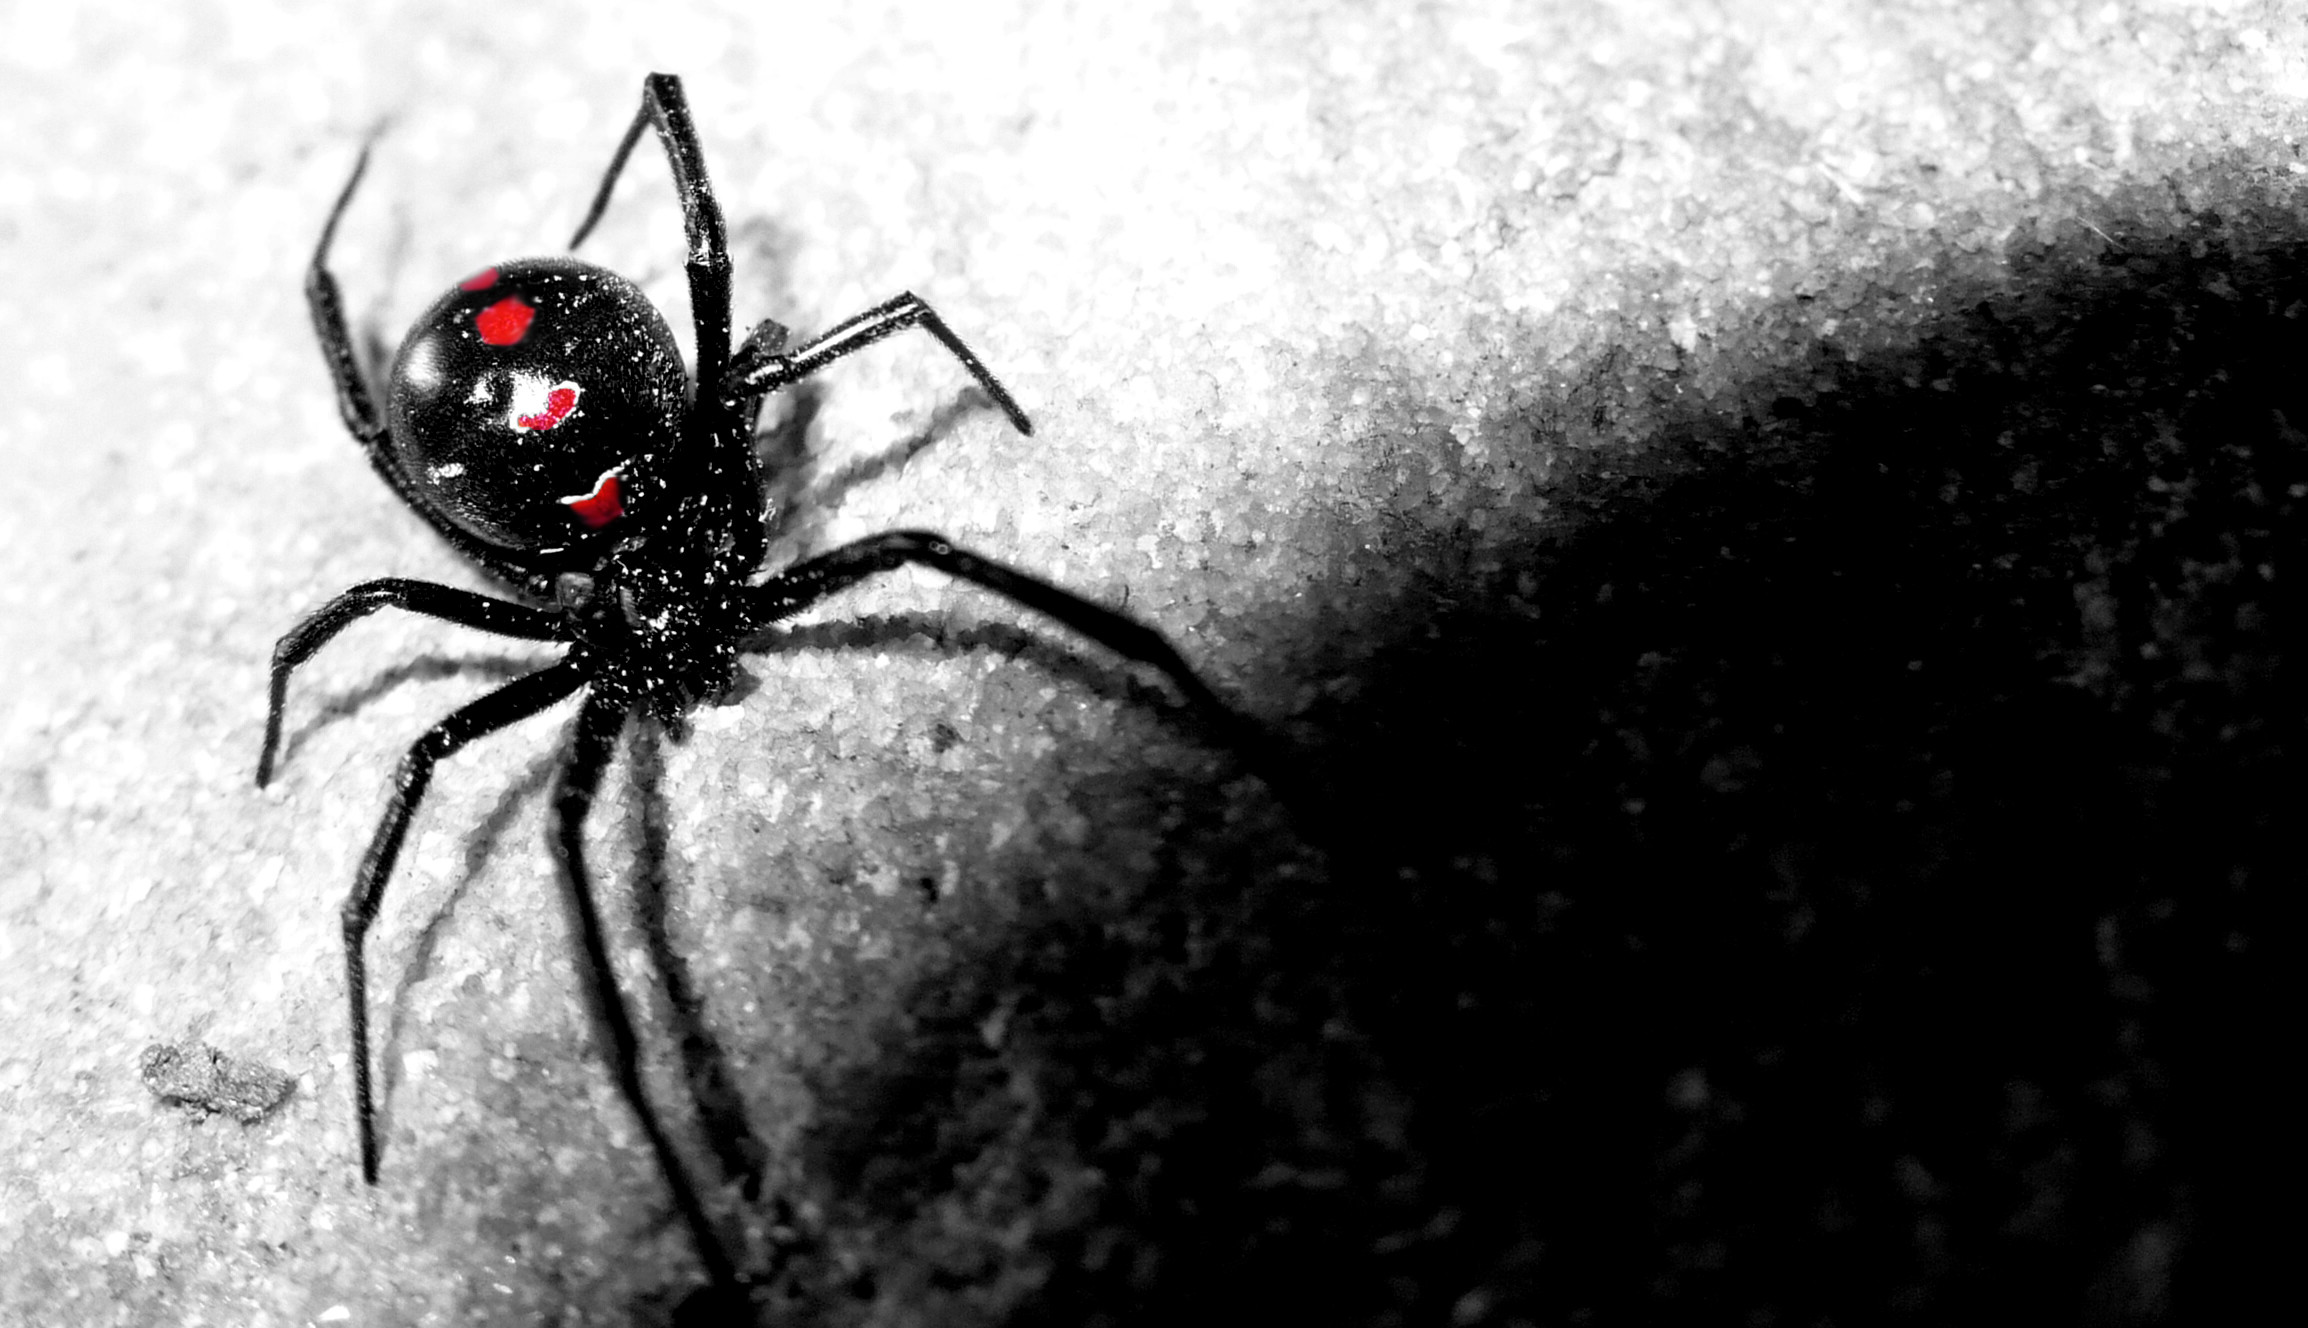 spider wallpaper hd,black widow,spider,black,widow spider,invertebrate